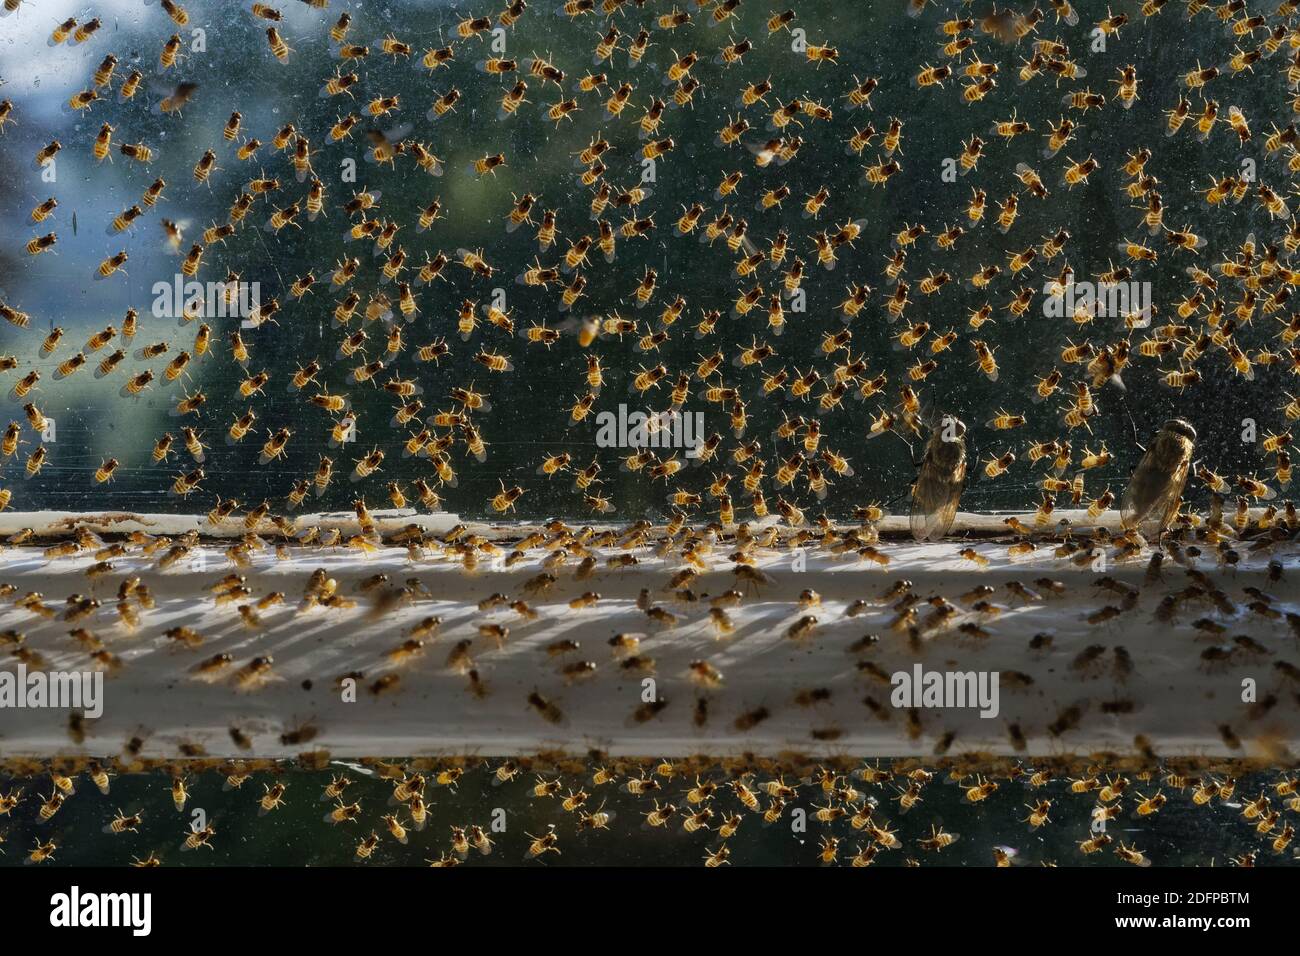 Gelbe Schwarmfliege / Chloropidfliege (Thaumatomyia notata) Aggregation und  zwei Cluster-Fliegen (Pollenia sp.), die sich zwischen einem alten  Flügelfenster und Sek Stockfotografie - Alamy